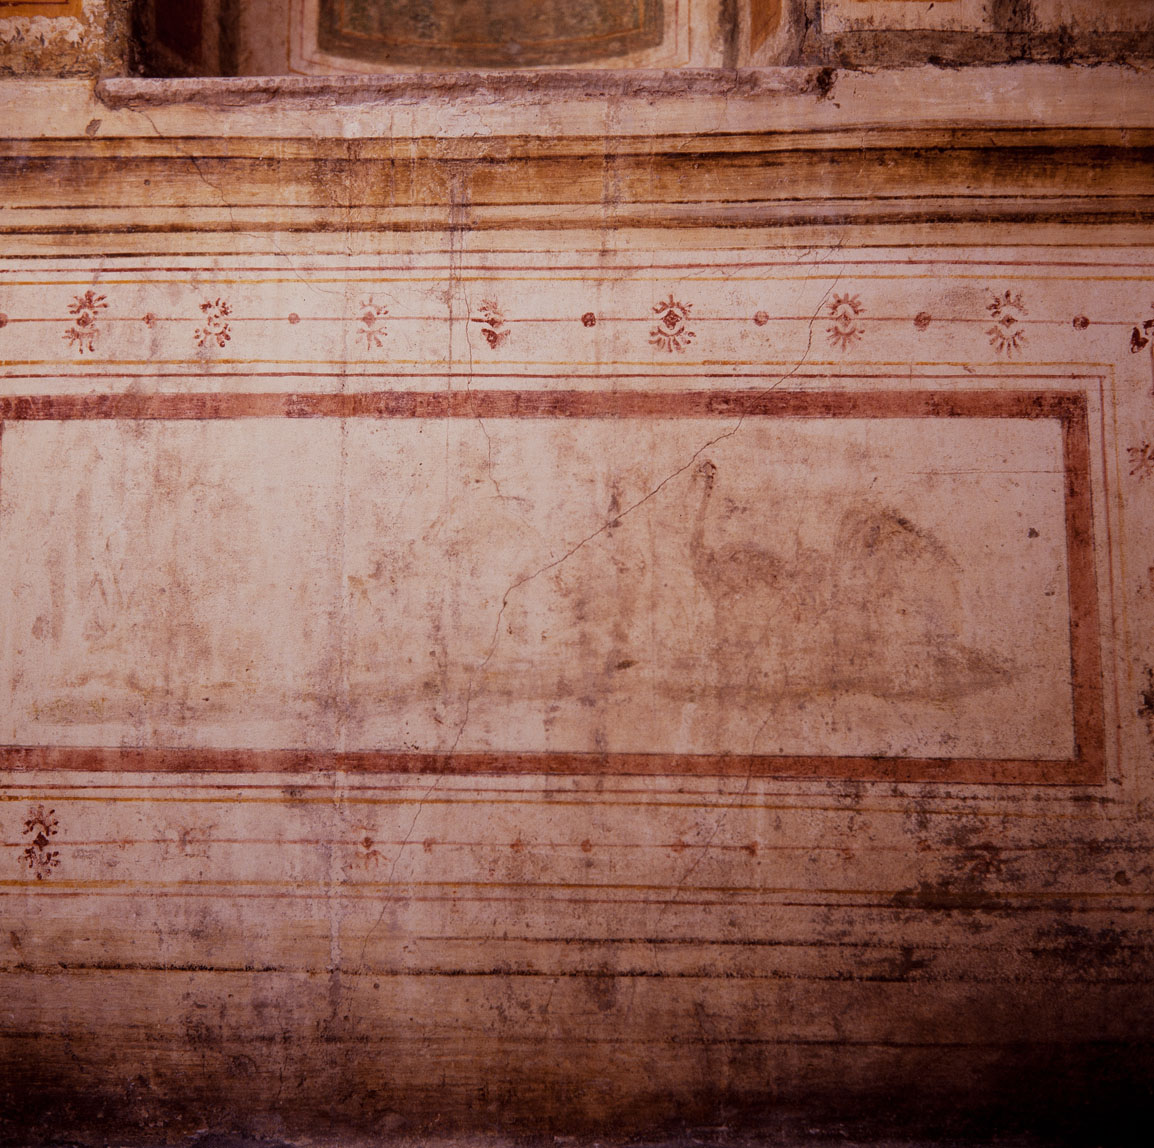 motivi decorativi vegetali con putti alati (dipinto murale) di Pippi Giulio detto Giulio Romano, Giovanni da Udine detto Giovanni Ricamatore (sec. XVI)